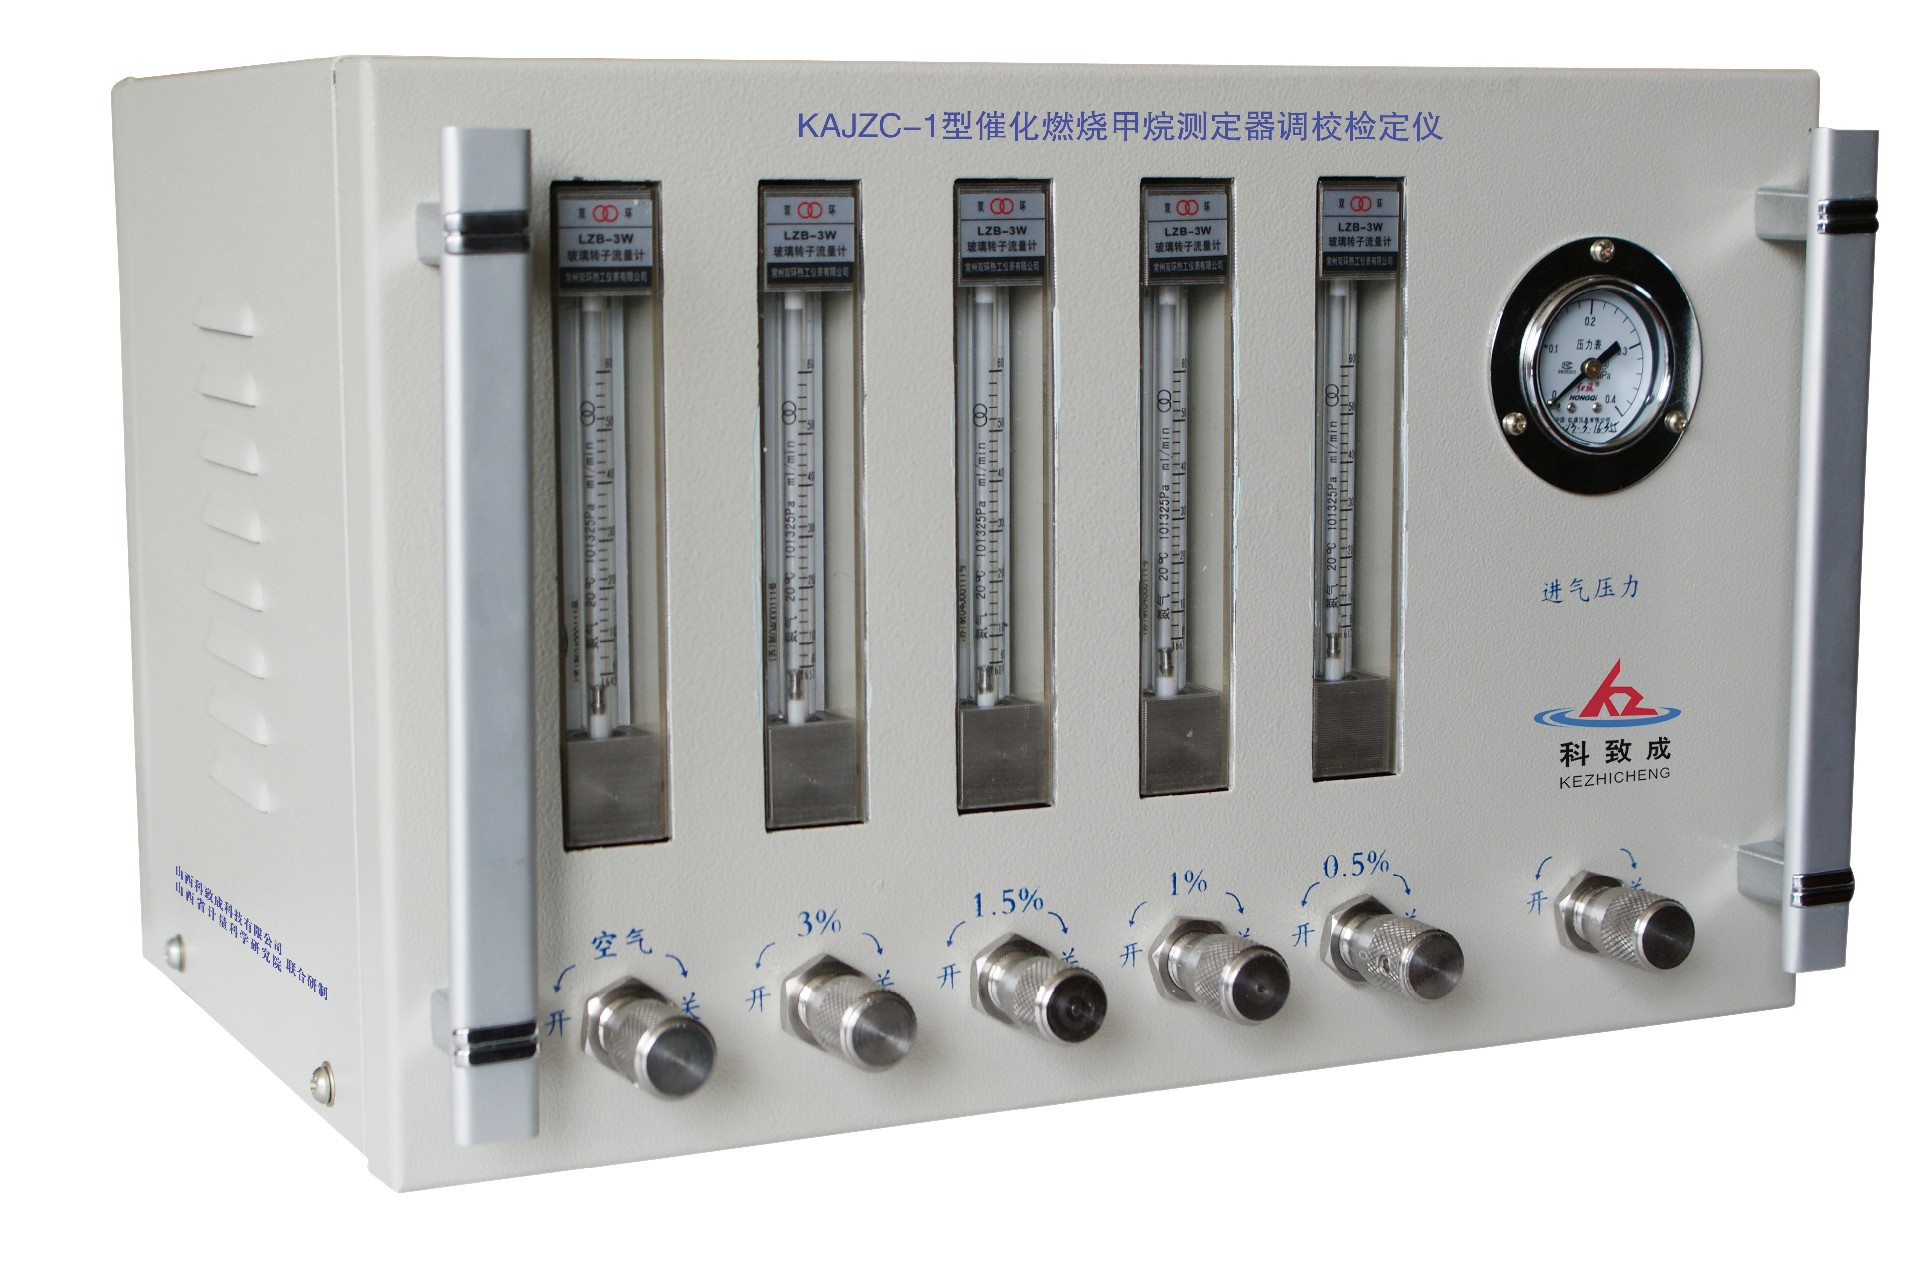 漯河KAJZC-1型催化燃烧甲烷测定器调校检定仪